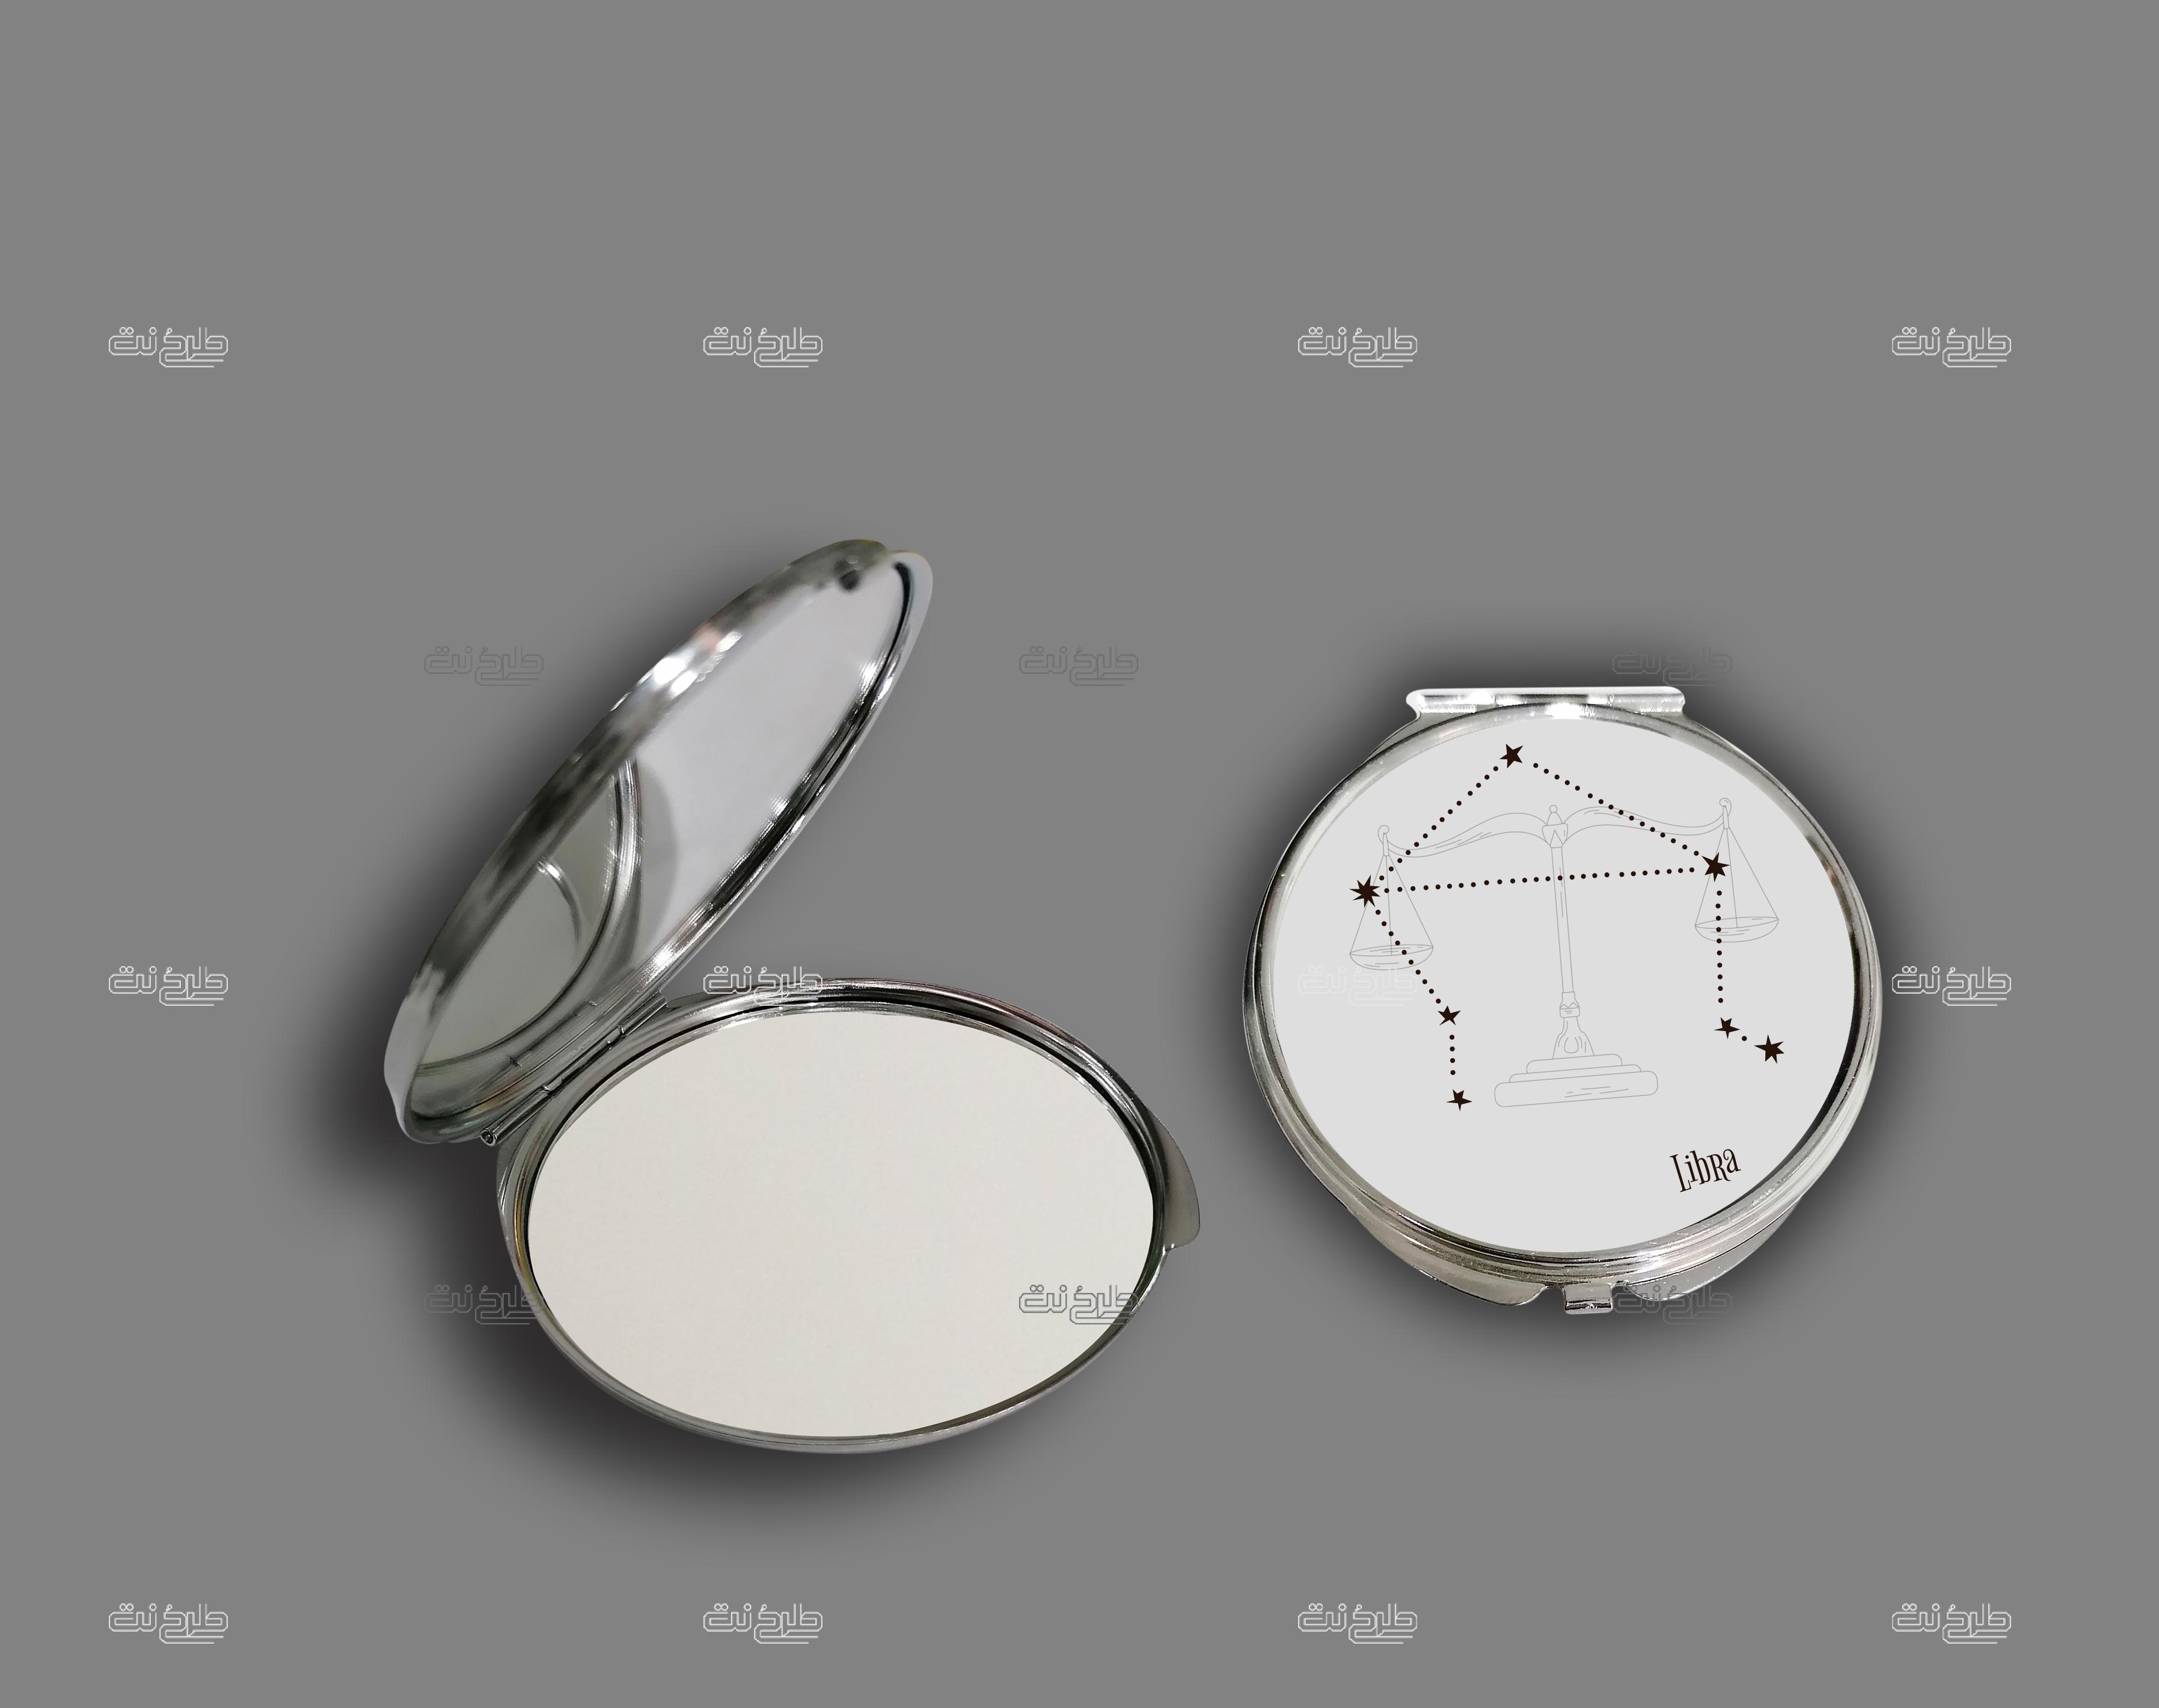 دانلود طرح لایه باز آینه ماه تولد با متن LibRa